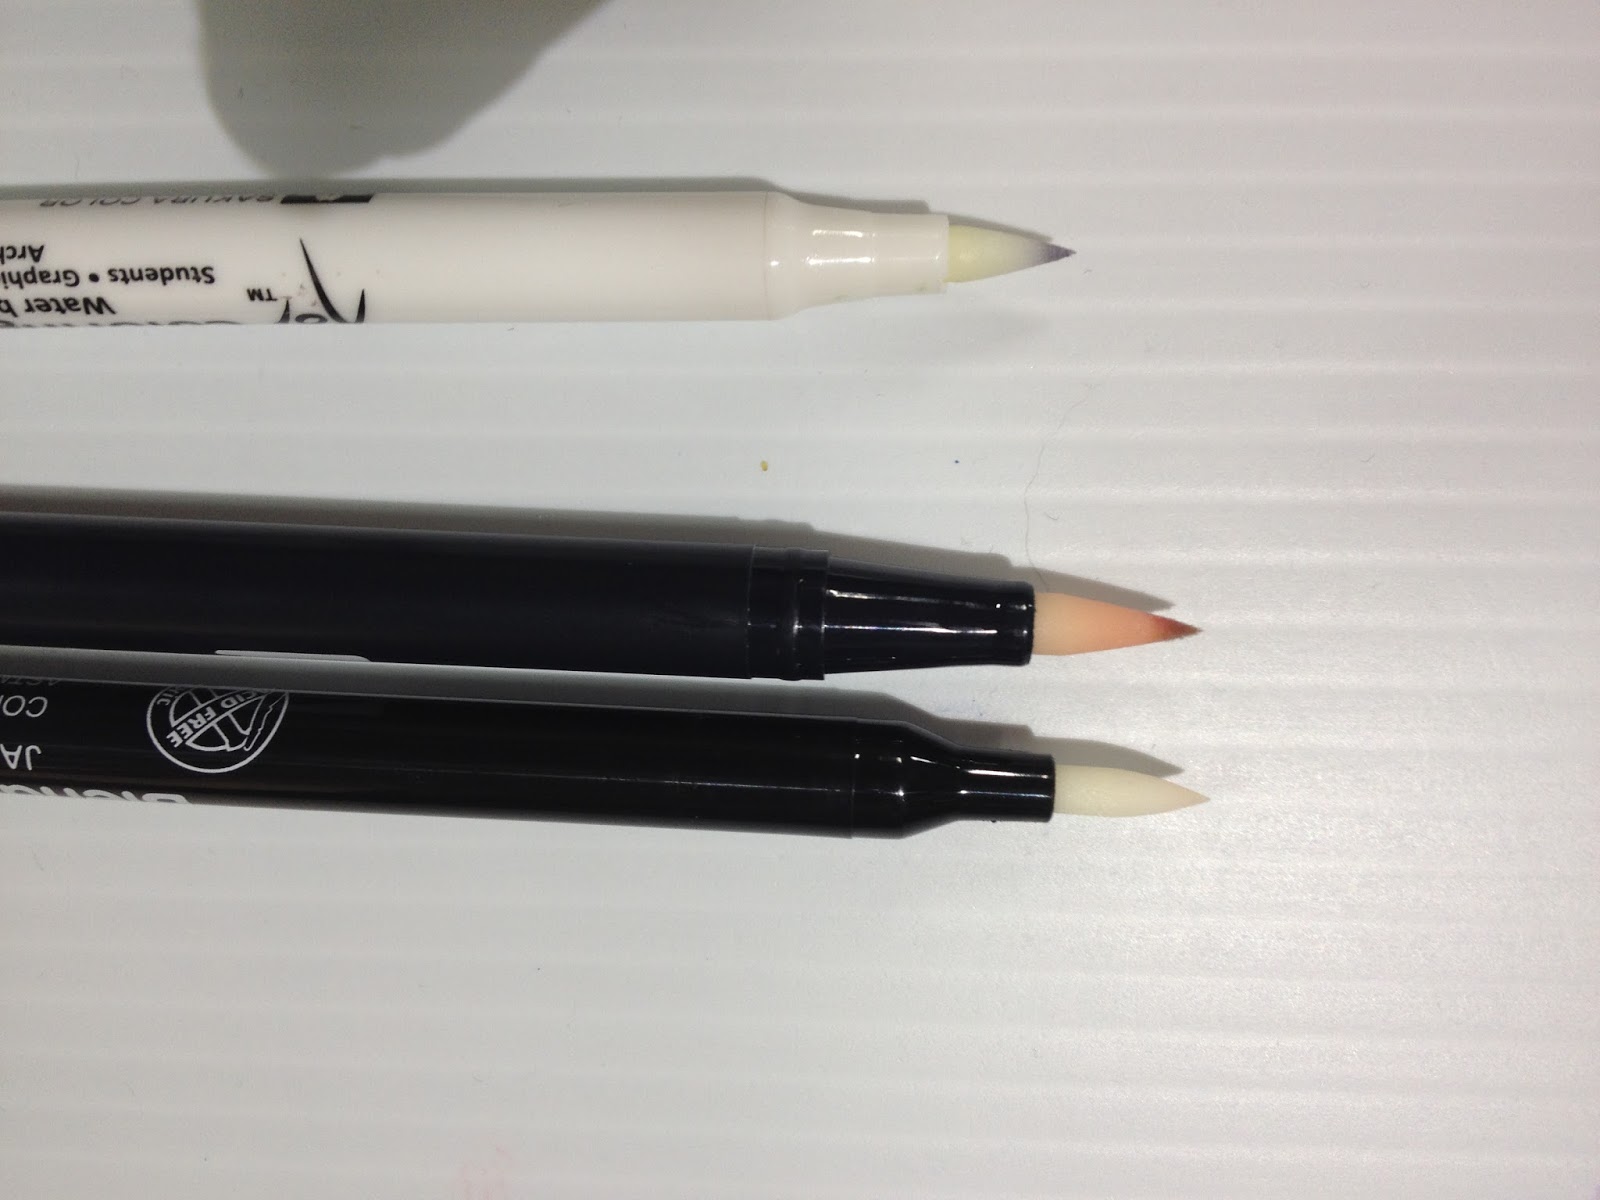 Create Dark Skin Tones with Water Color - Koi Coloring Brush Pens